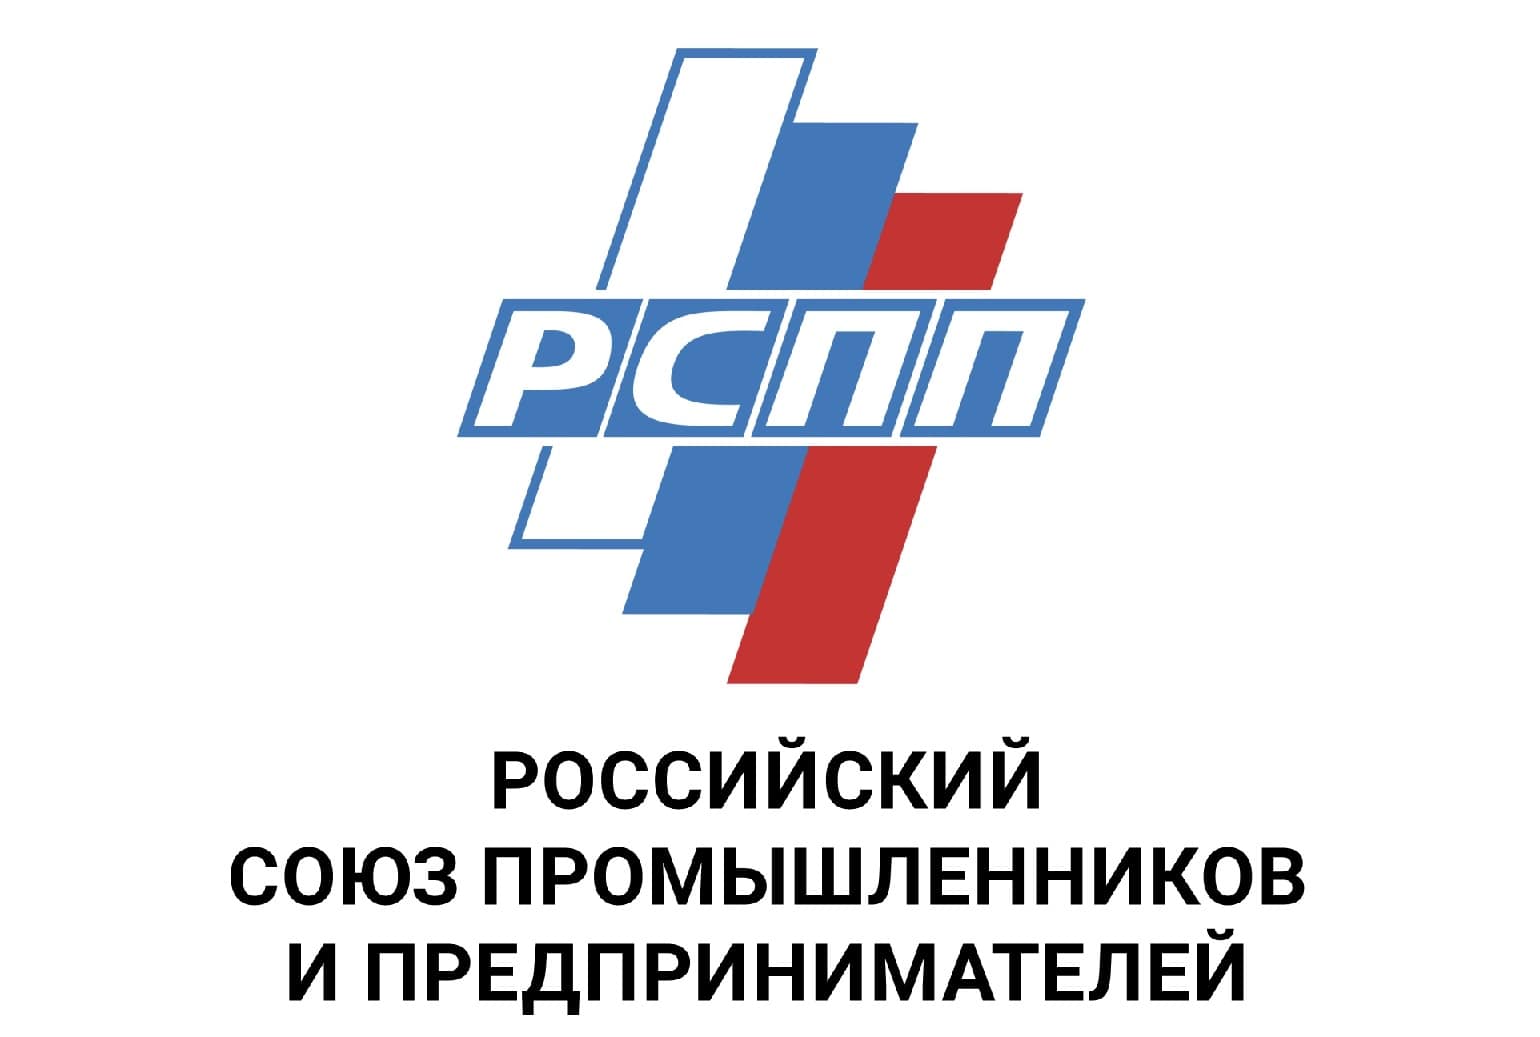 РСПП Российский союз промышленников и предпринимателей